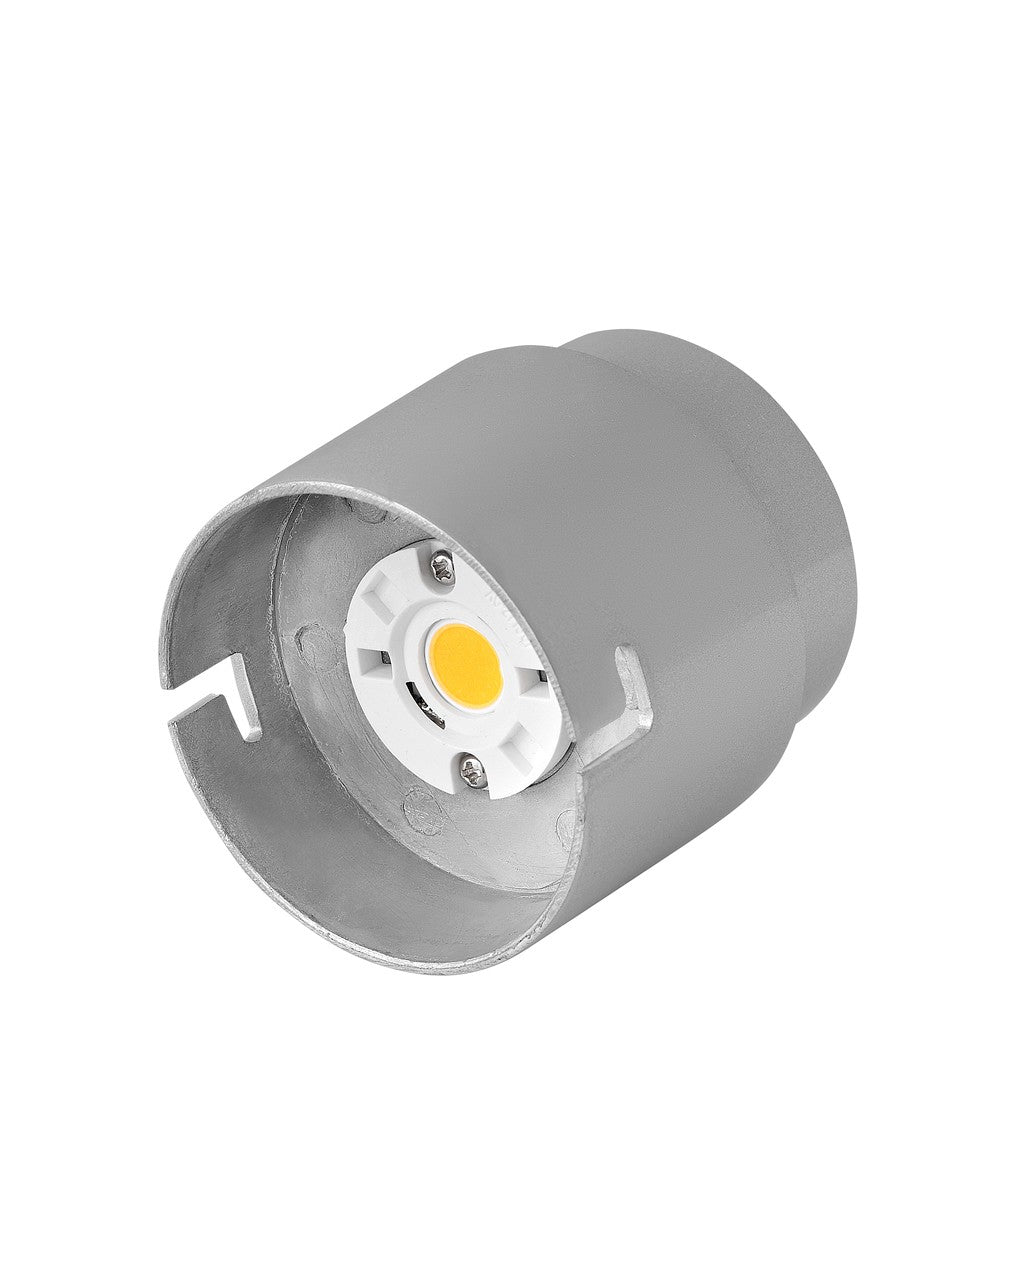 Hinkley Canada - Adjustable LED Engine - Led Bulb- Union Lighting Luminaires Decor